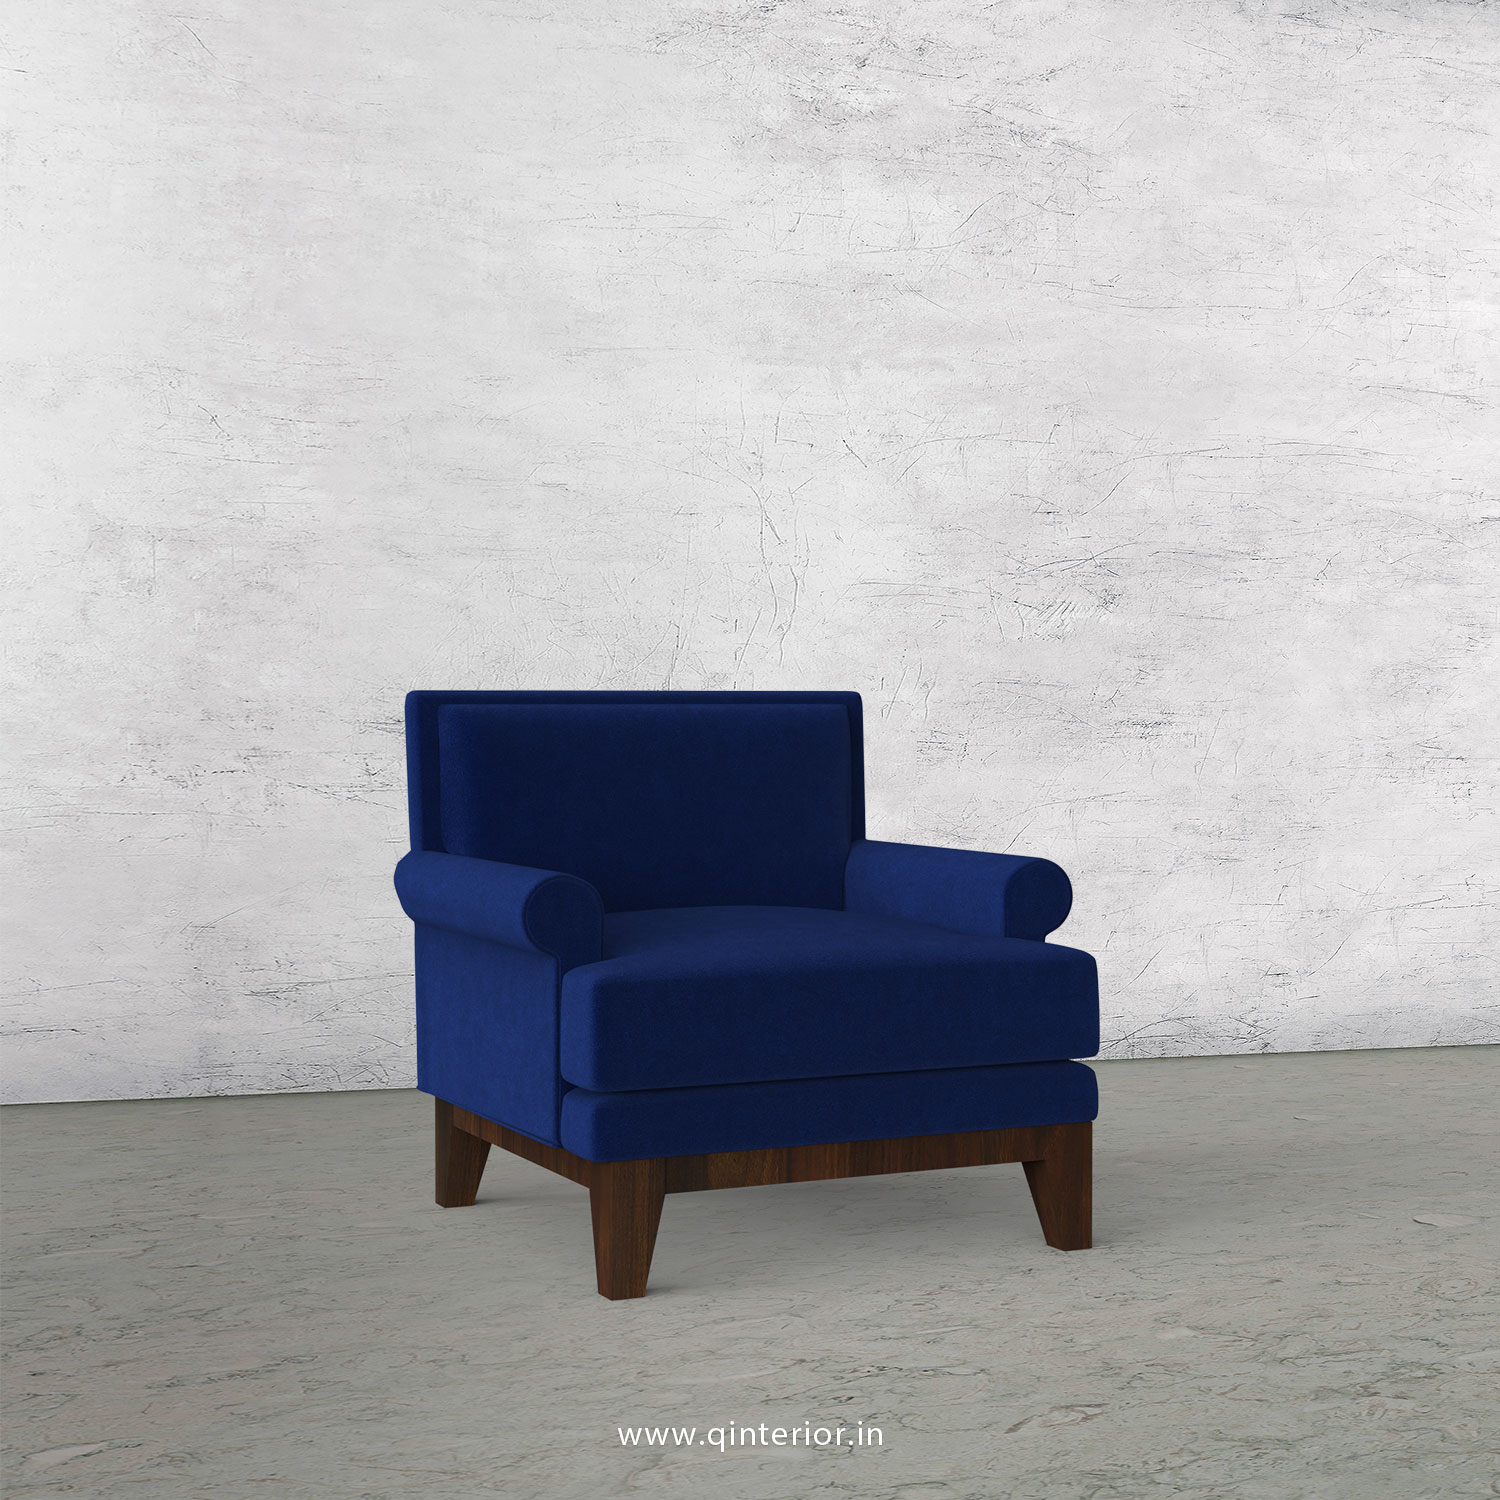 Aviana 1 Seater Sofa in Velvet Fabric - SFA001 VL05